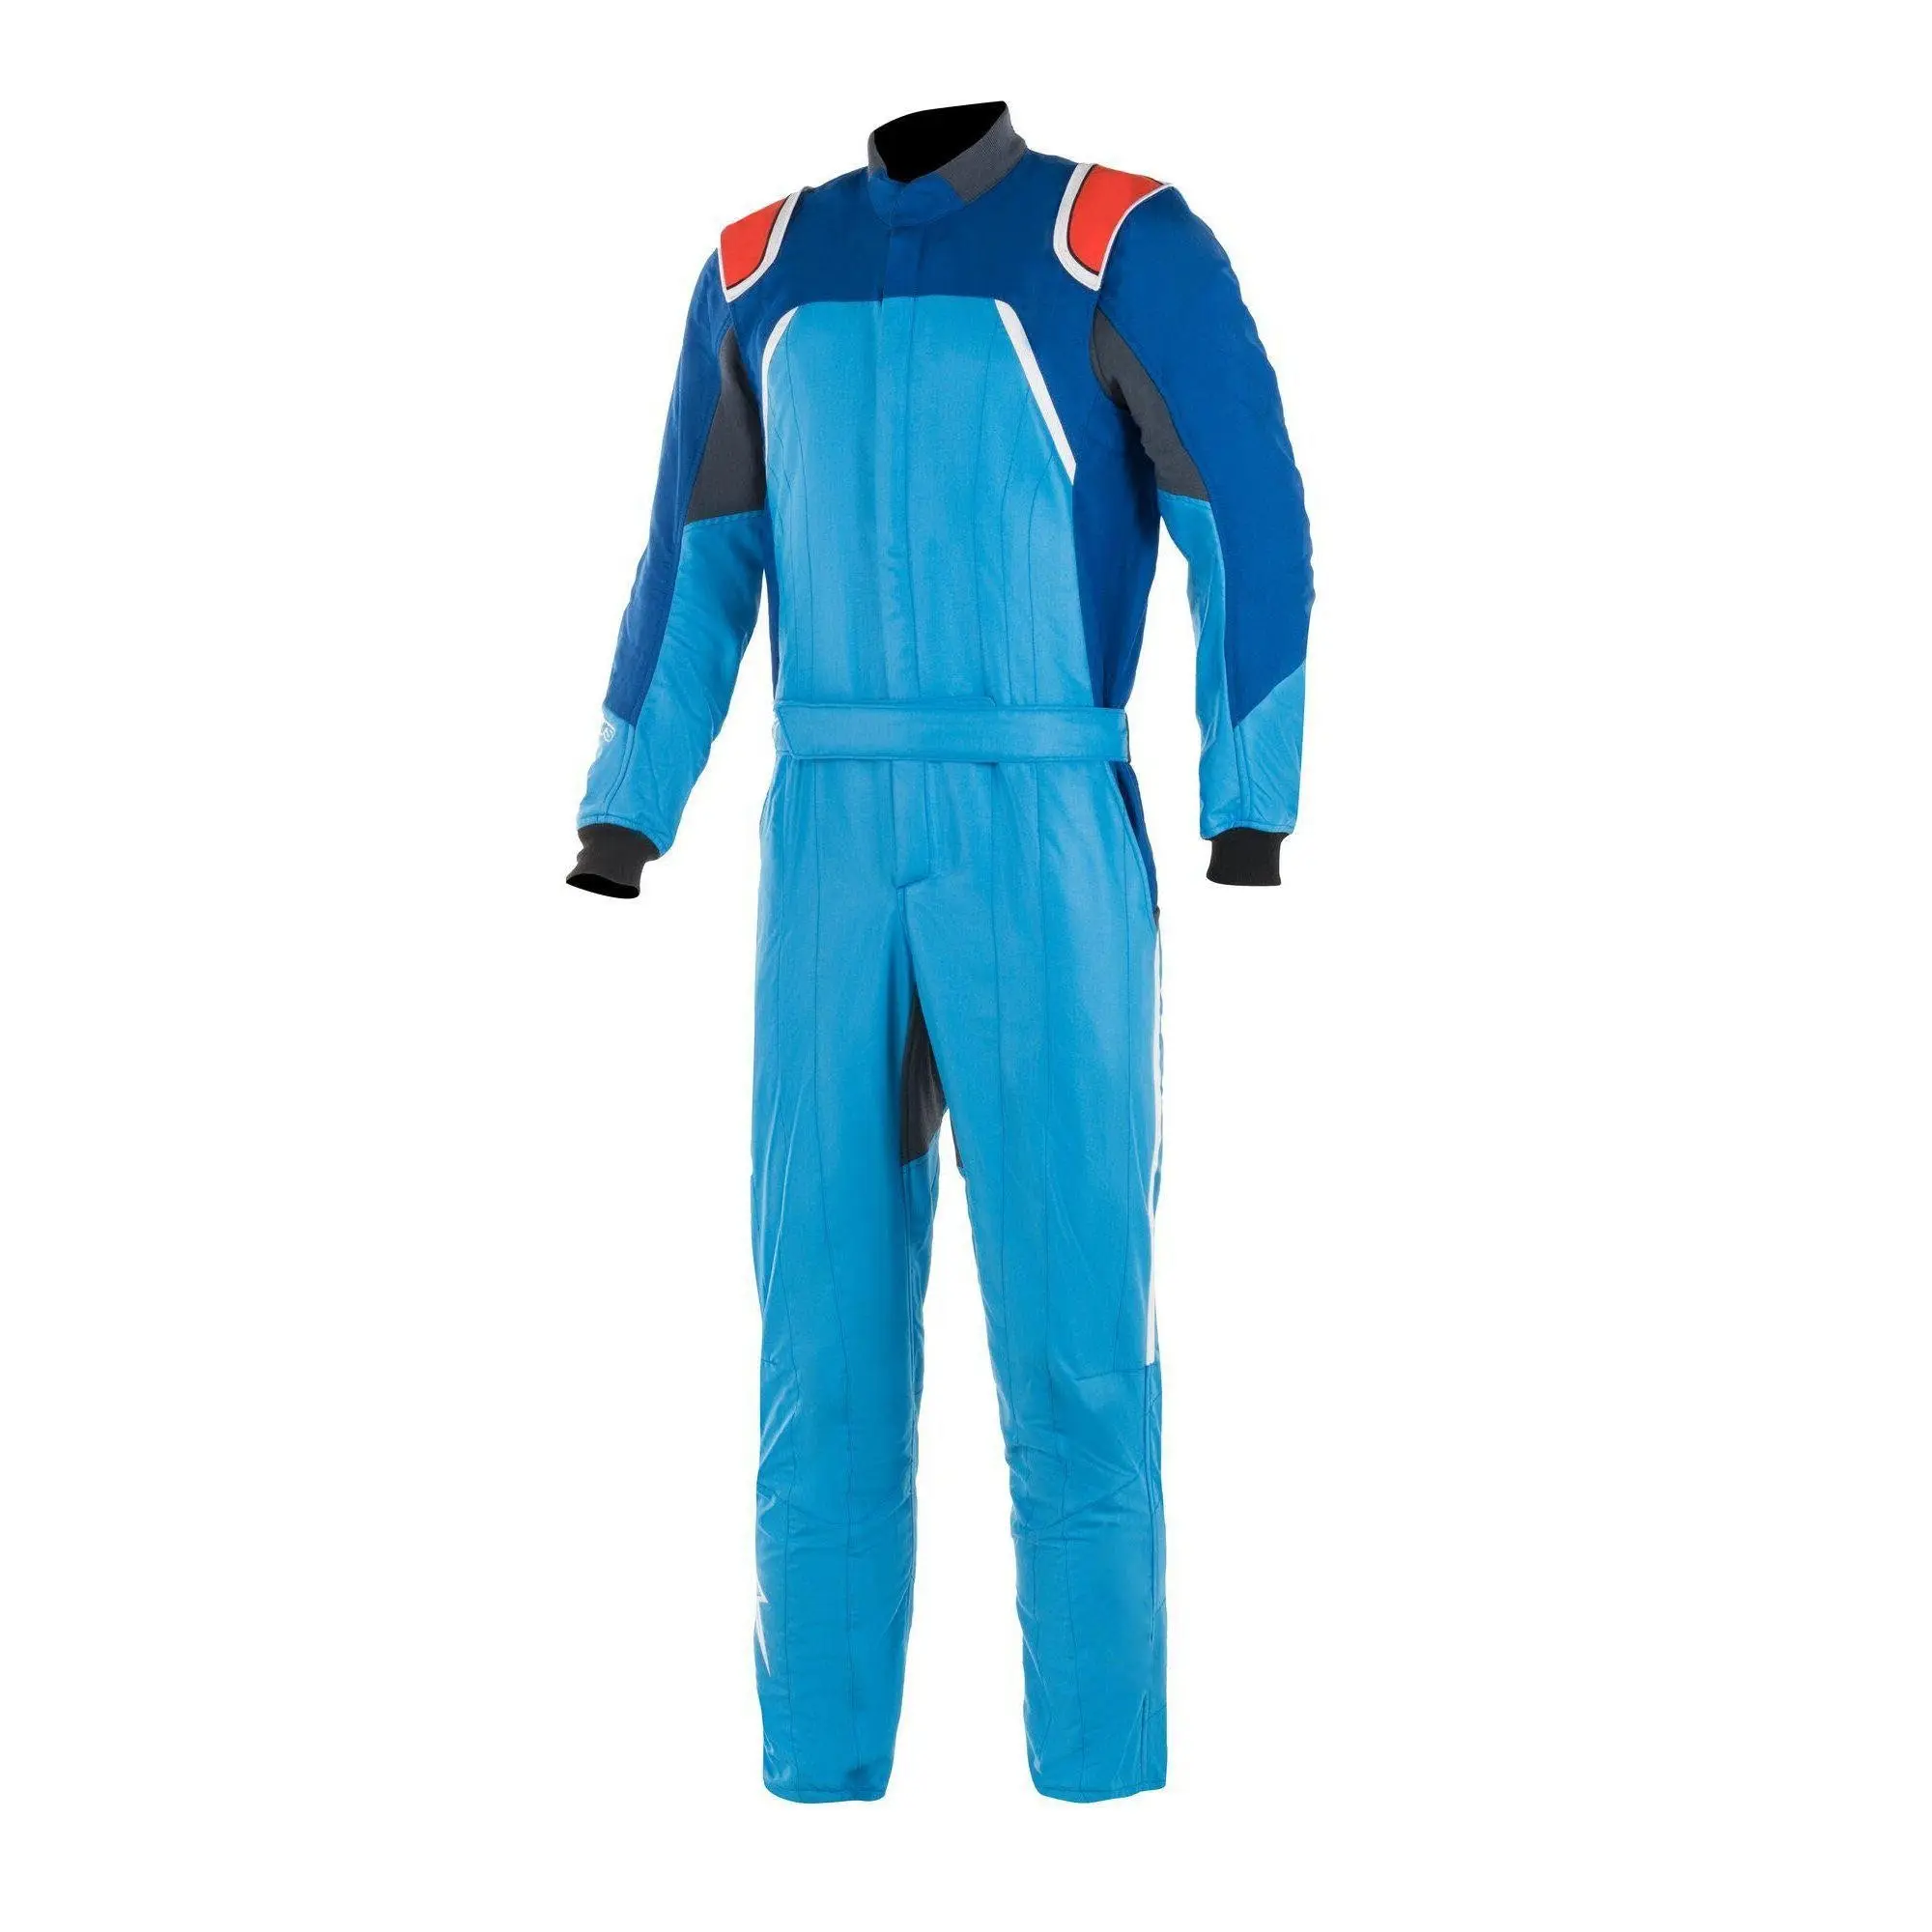 Высококачественный гоночный костюм для картинга, полностью настраиваемый гоночный костюм для картинга, профессиональный комбинезон, огнестойкий гоночный костюм